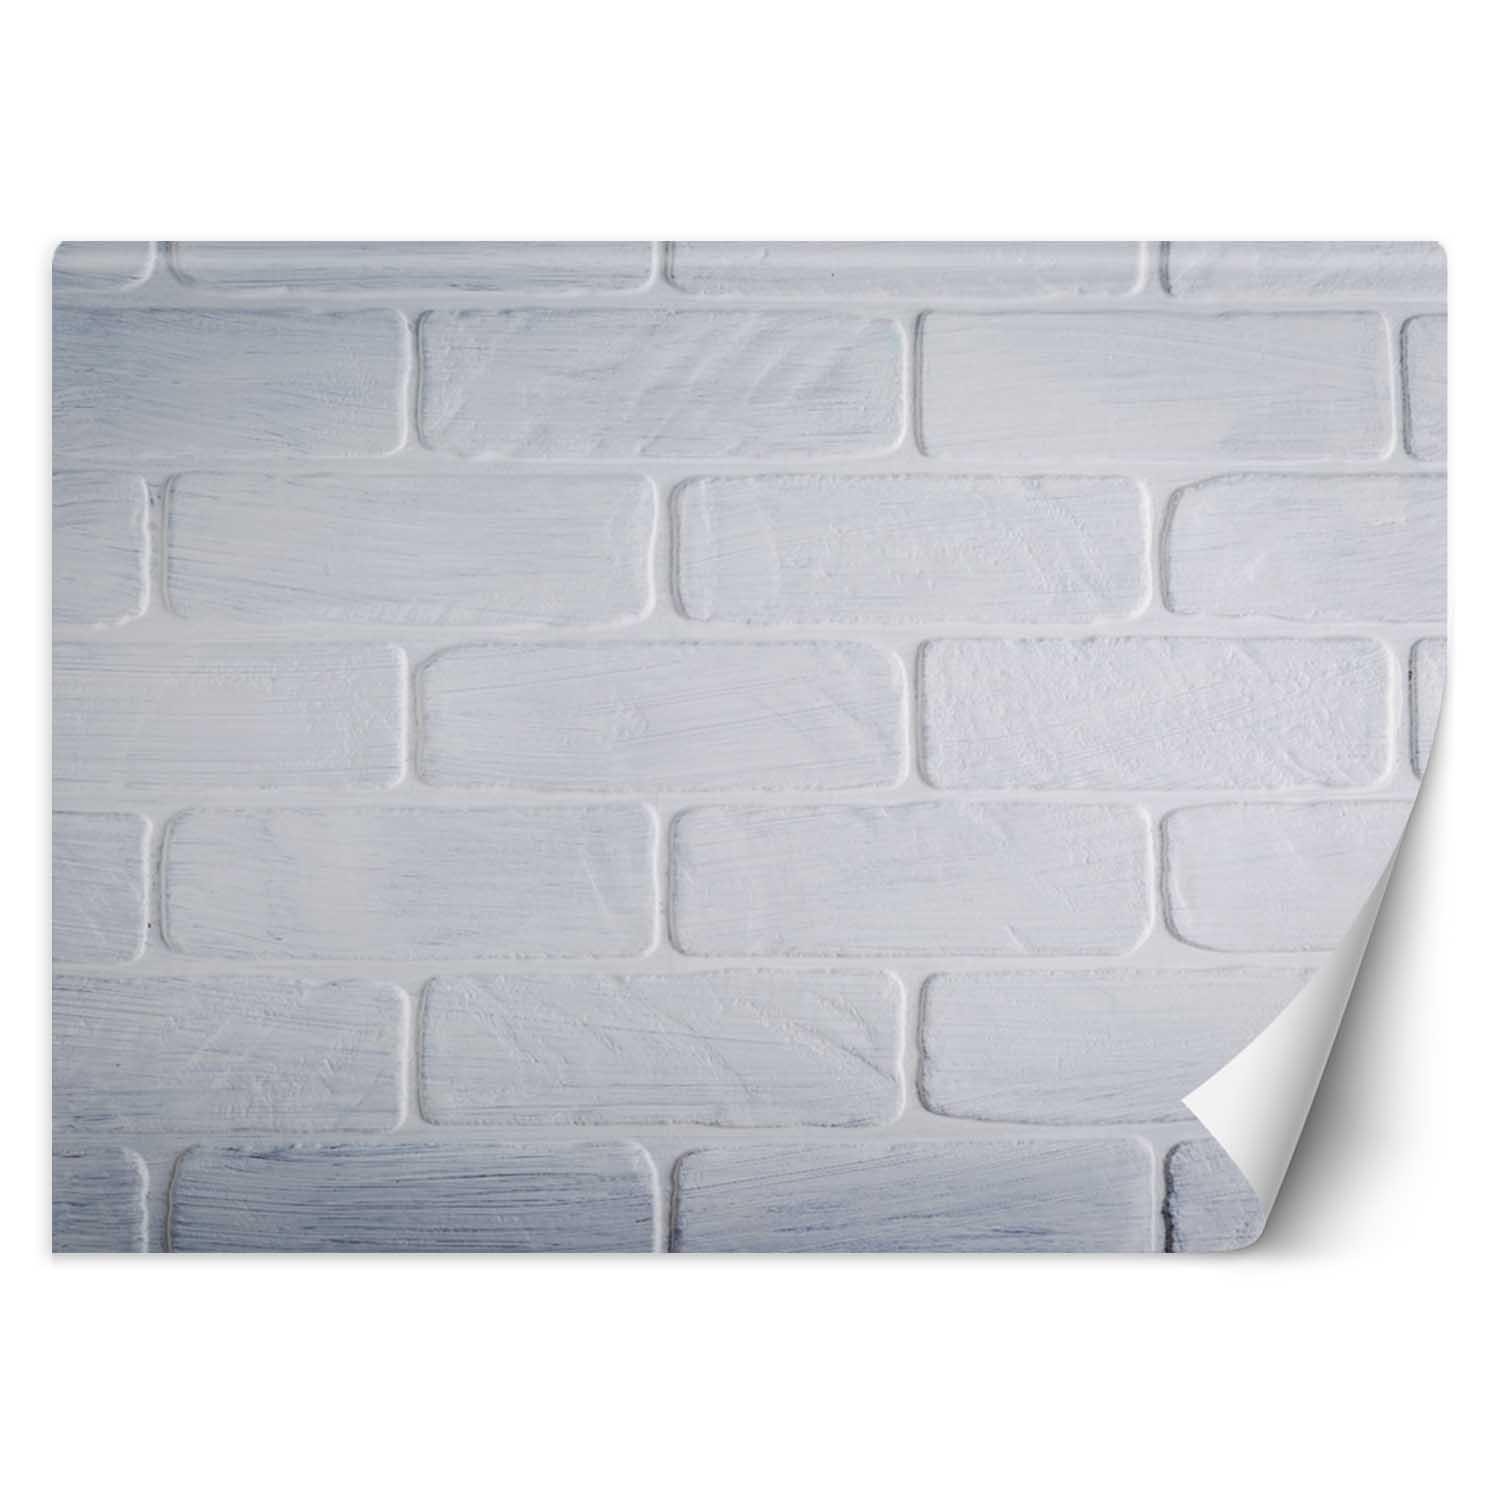 Trend24 – Behang – Witte Bakstenen Muur – Vliesbehang – Behang Woonkamer – Fotobehang – 350x245x2 cm – Incl. behanglijm